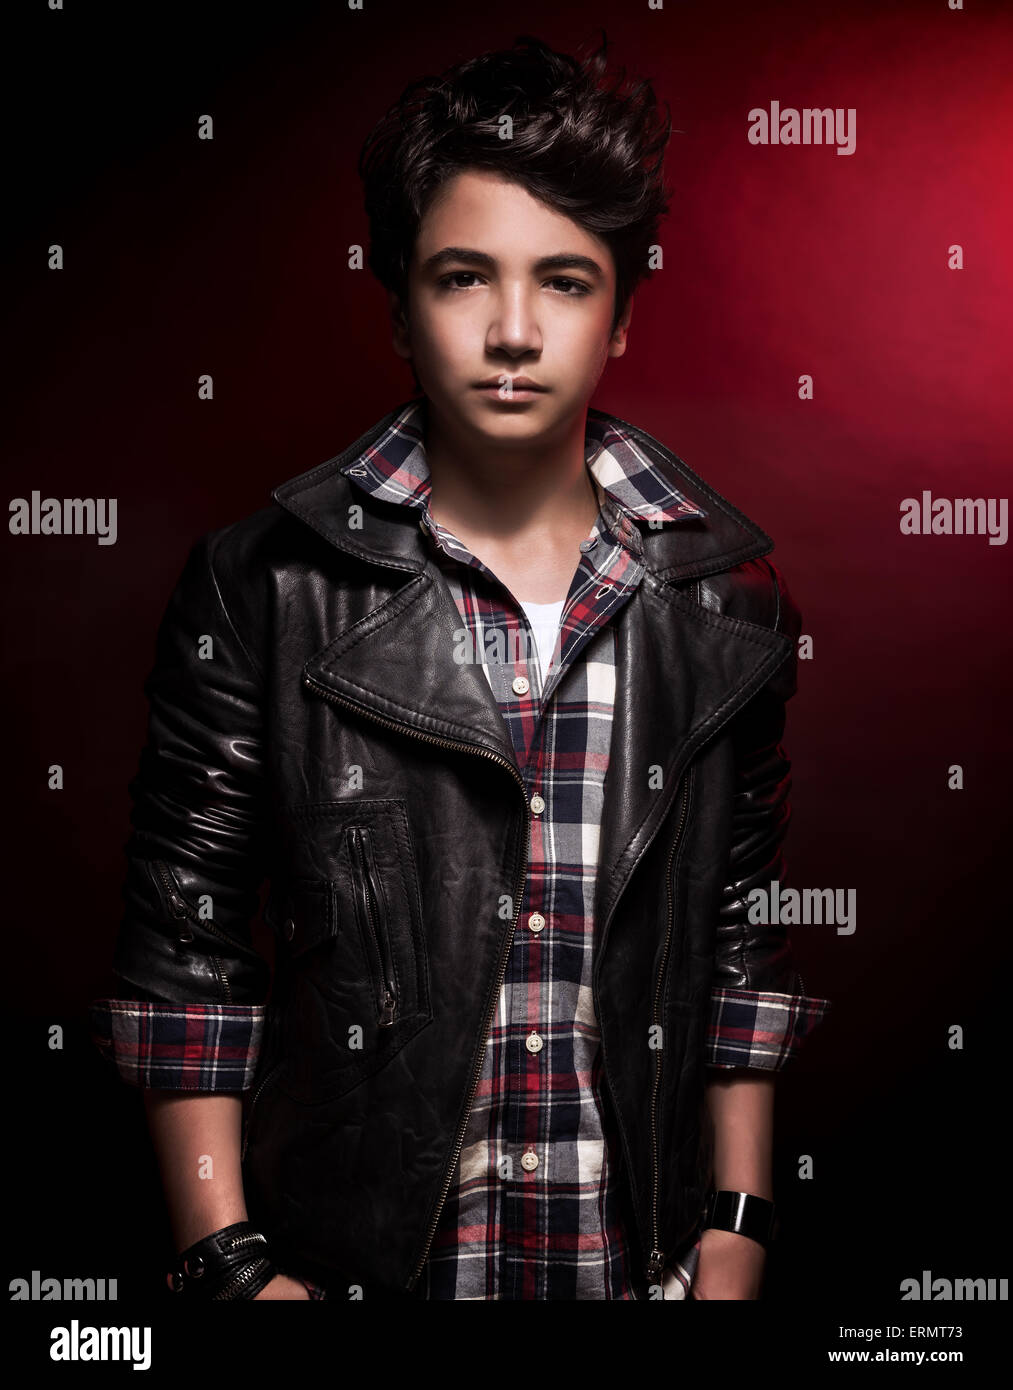 Stilvolle teenboy Porträt über dunkelroten Hintergrund, schönes Modell tragen Mode Hemd und Leder Jacke Stockfoto